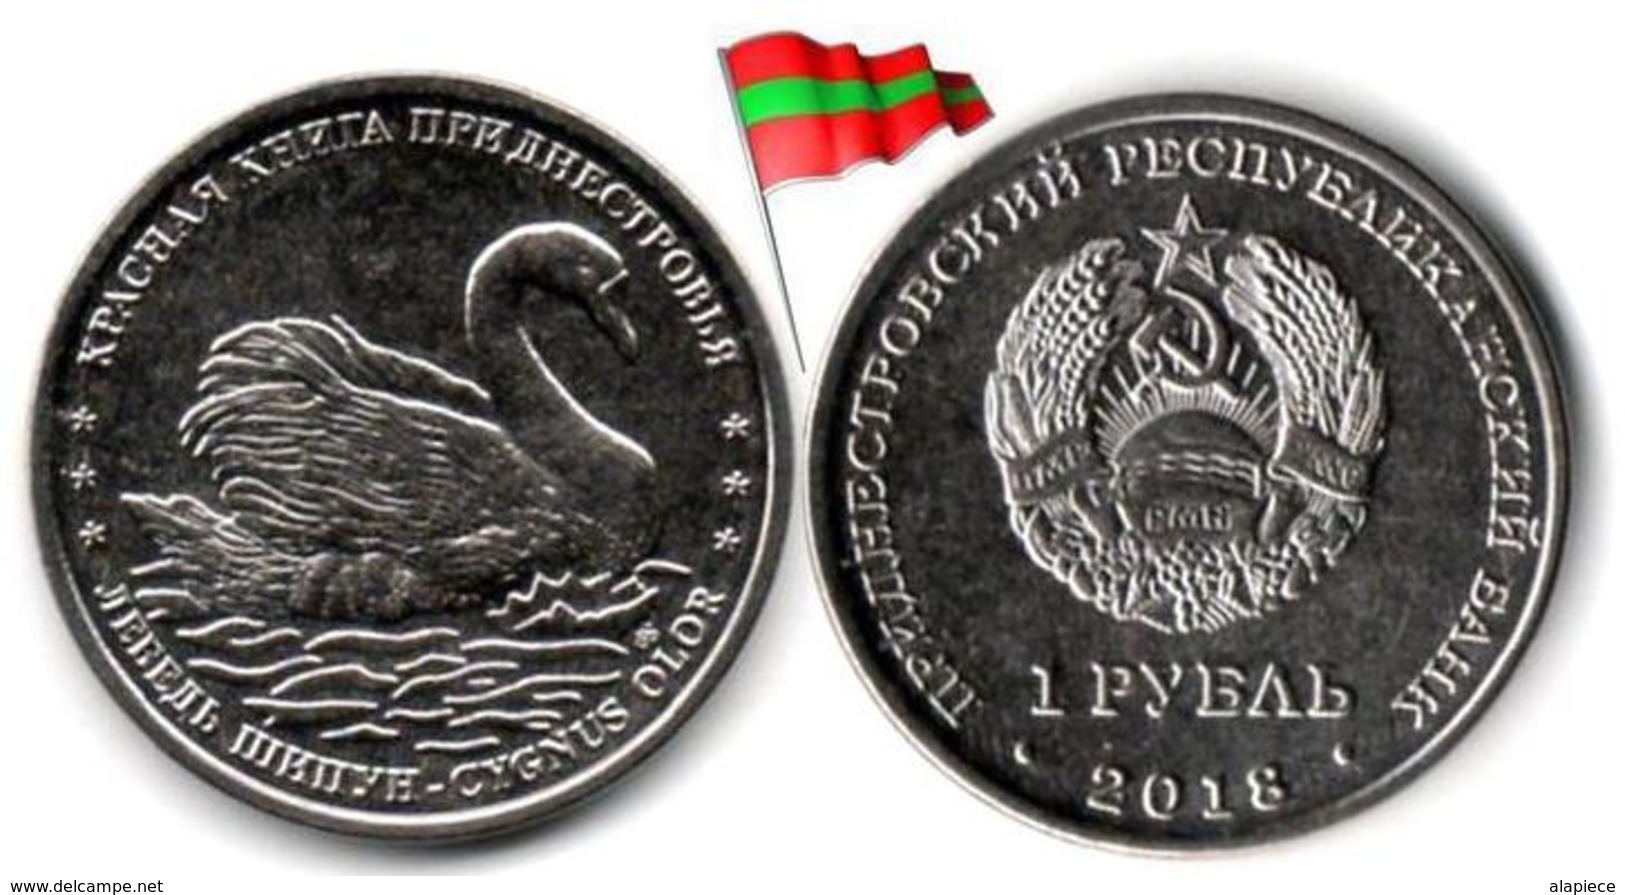 Transnistria - 1 Rouble 2018 (Mute Swan - UNC - 50,000Ex.) - Moldova